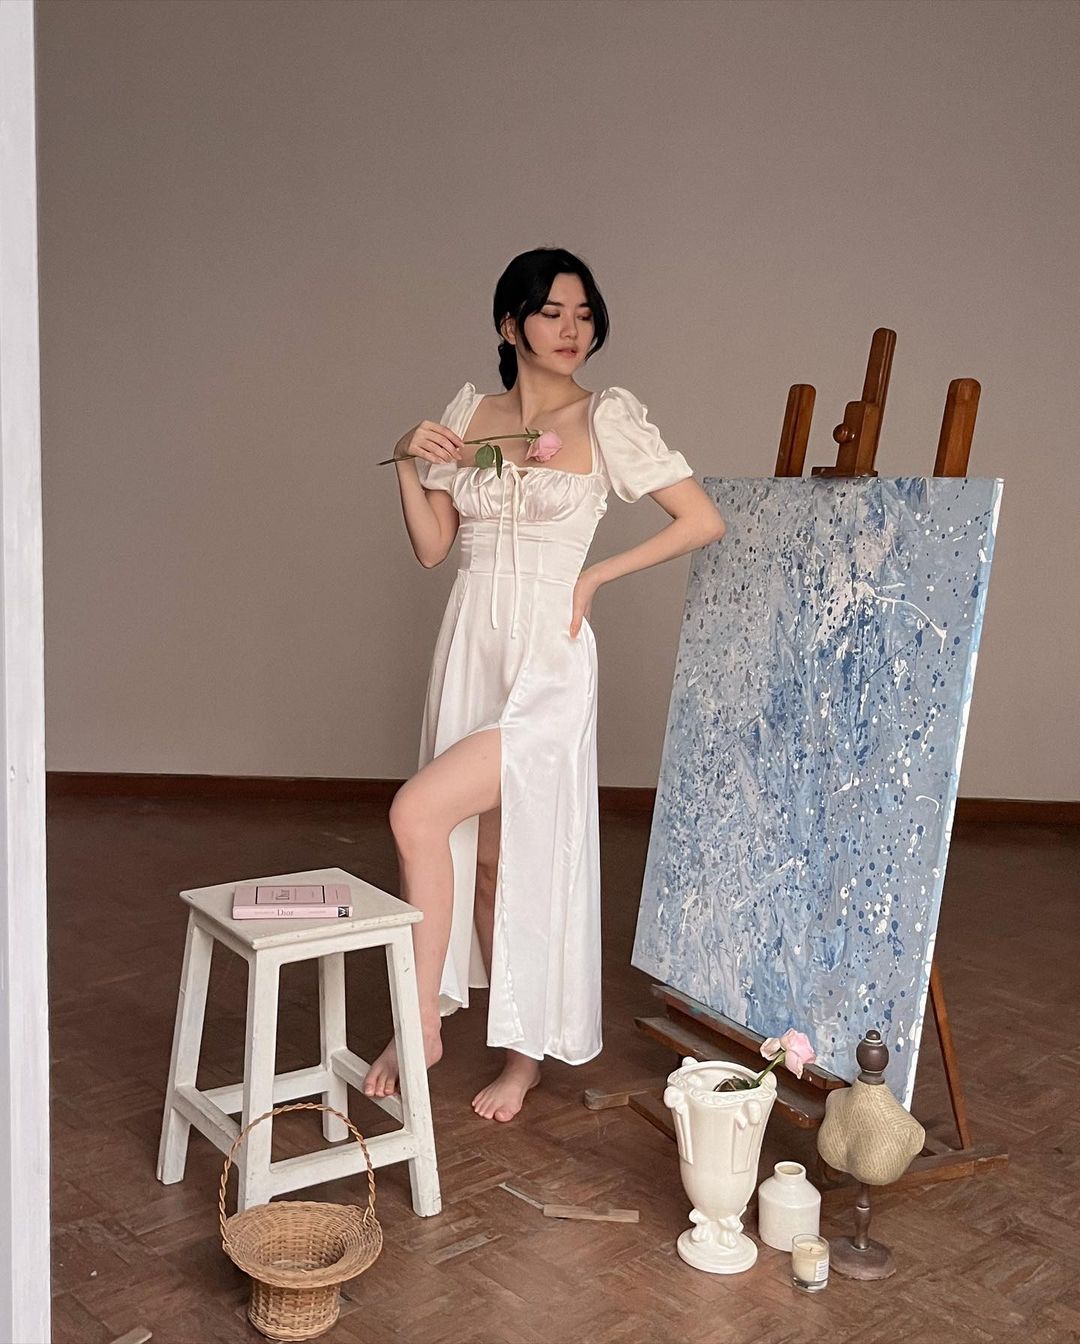 身穿白色 Adella 連身裙的女士在畫室環境中的畫布上繪畫，周圍環繞著美術用品和木製畫架。